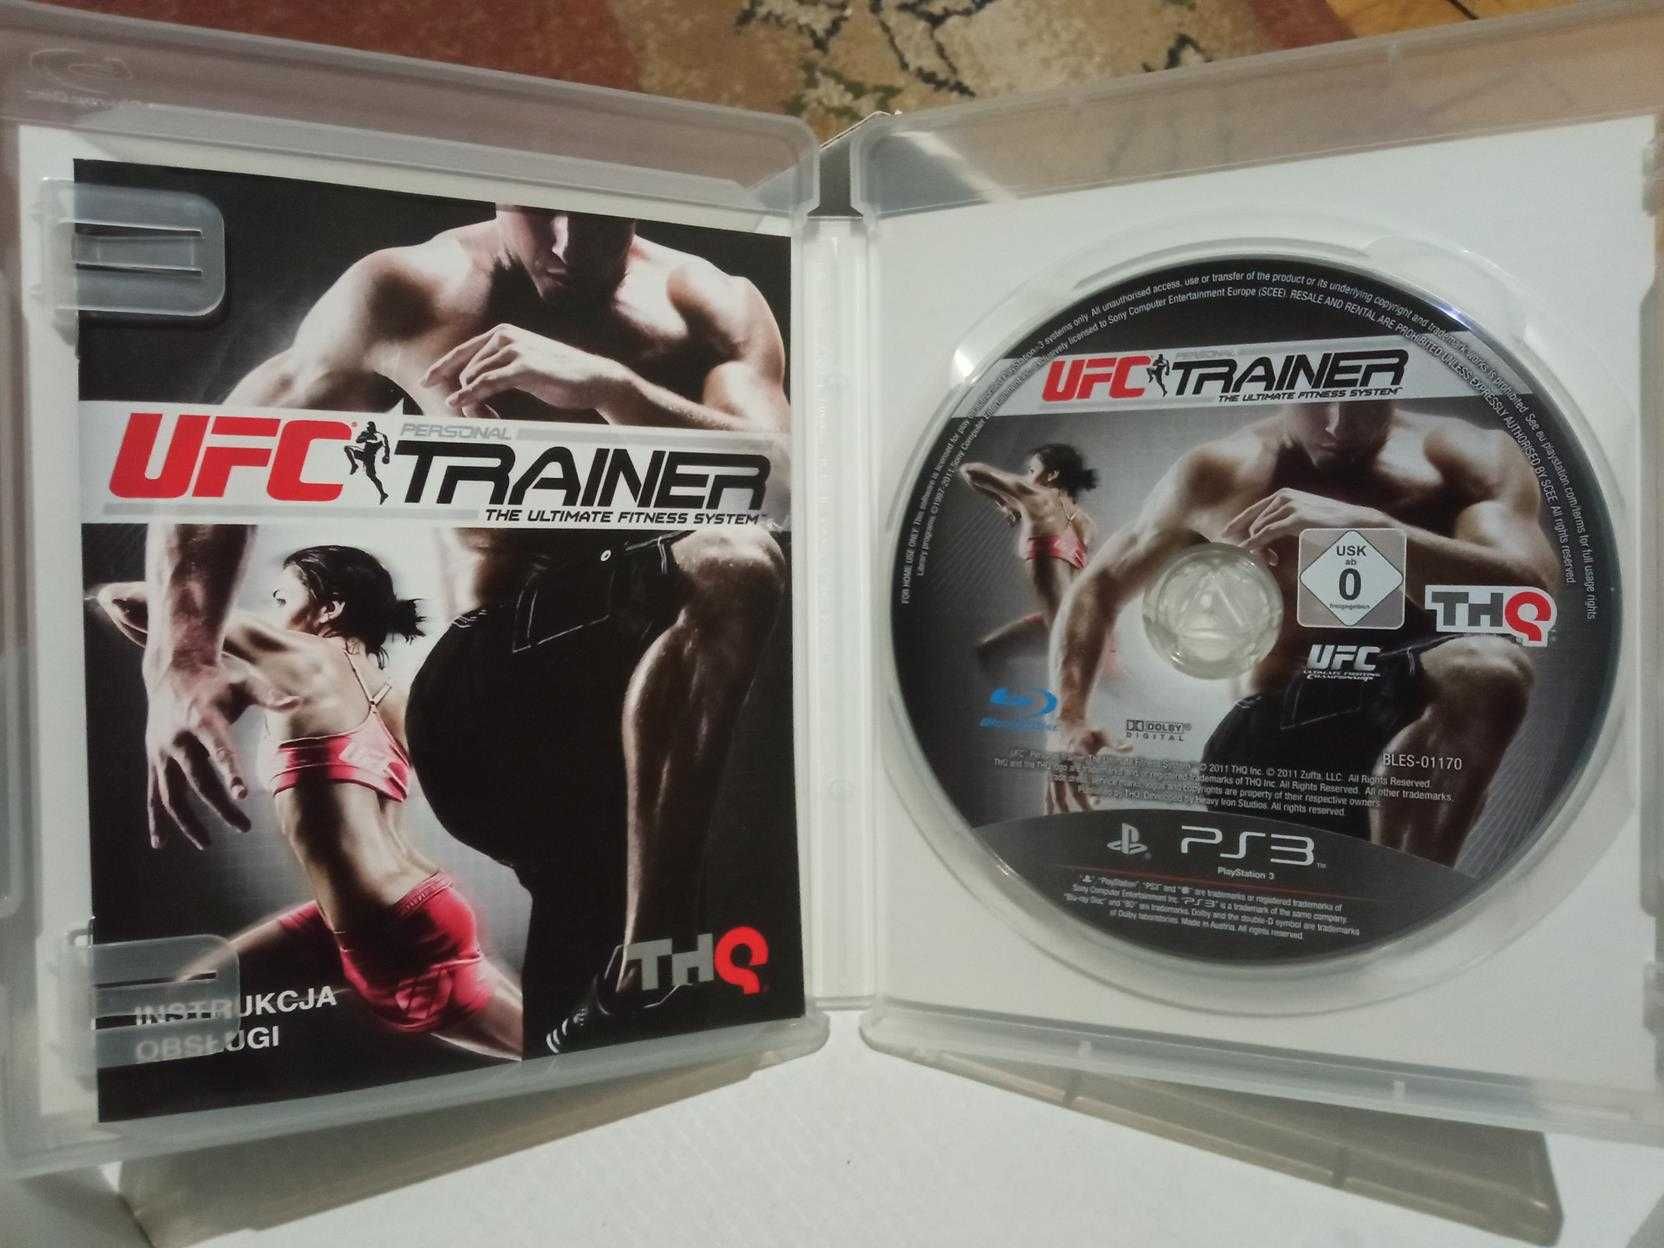 Gra UFC Personal TRAINER PS3 trener trening MMA sztuki walk